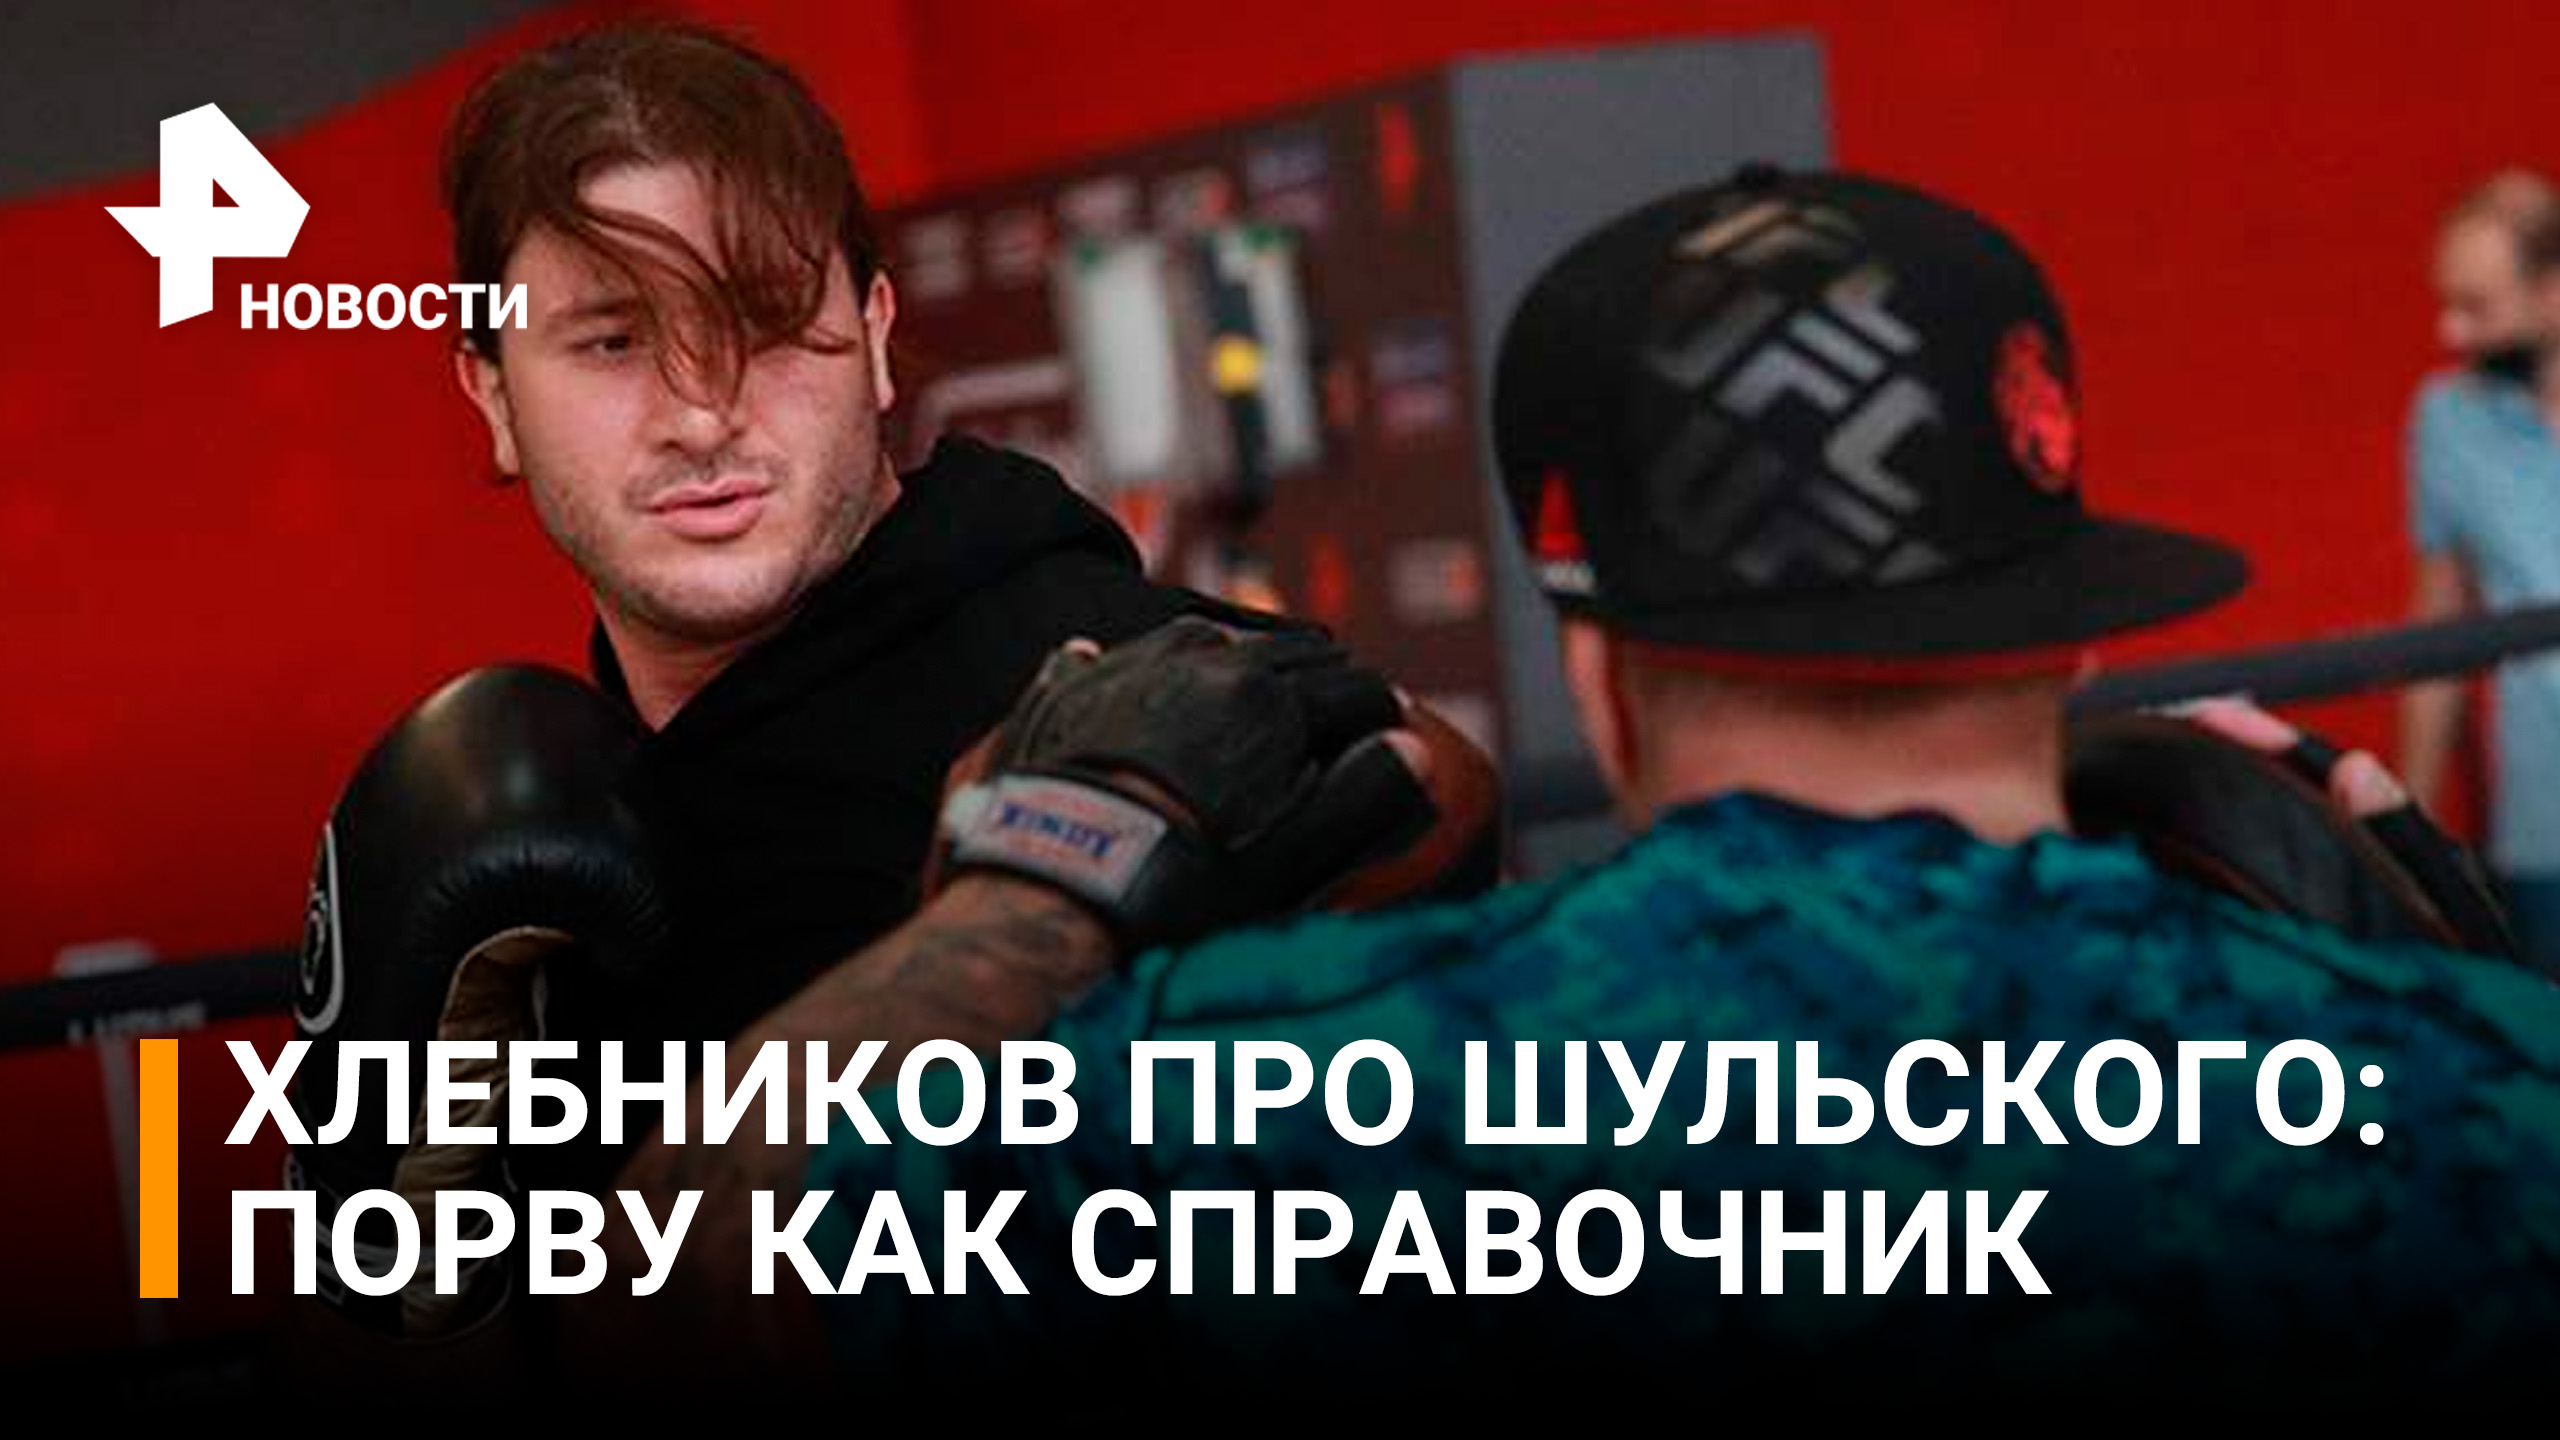 Боец ММА Хлебников перед боем с боксером Шульским пообещал «порвать» соперника / РЕН Новости